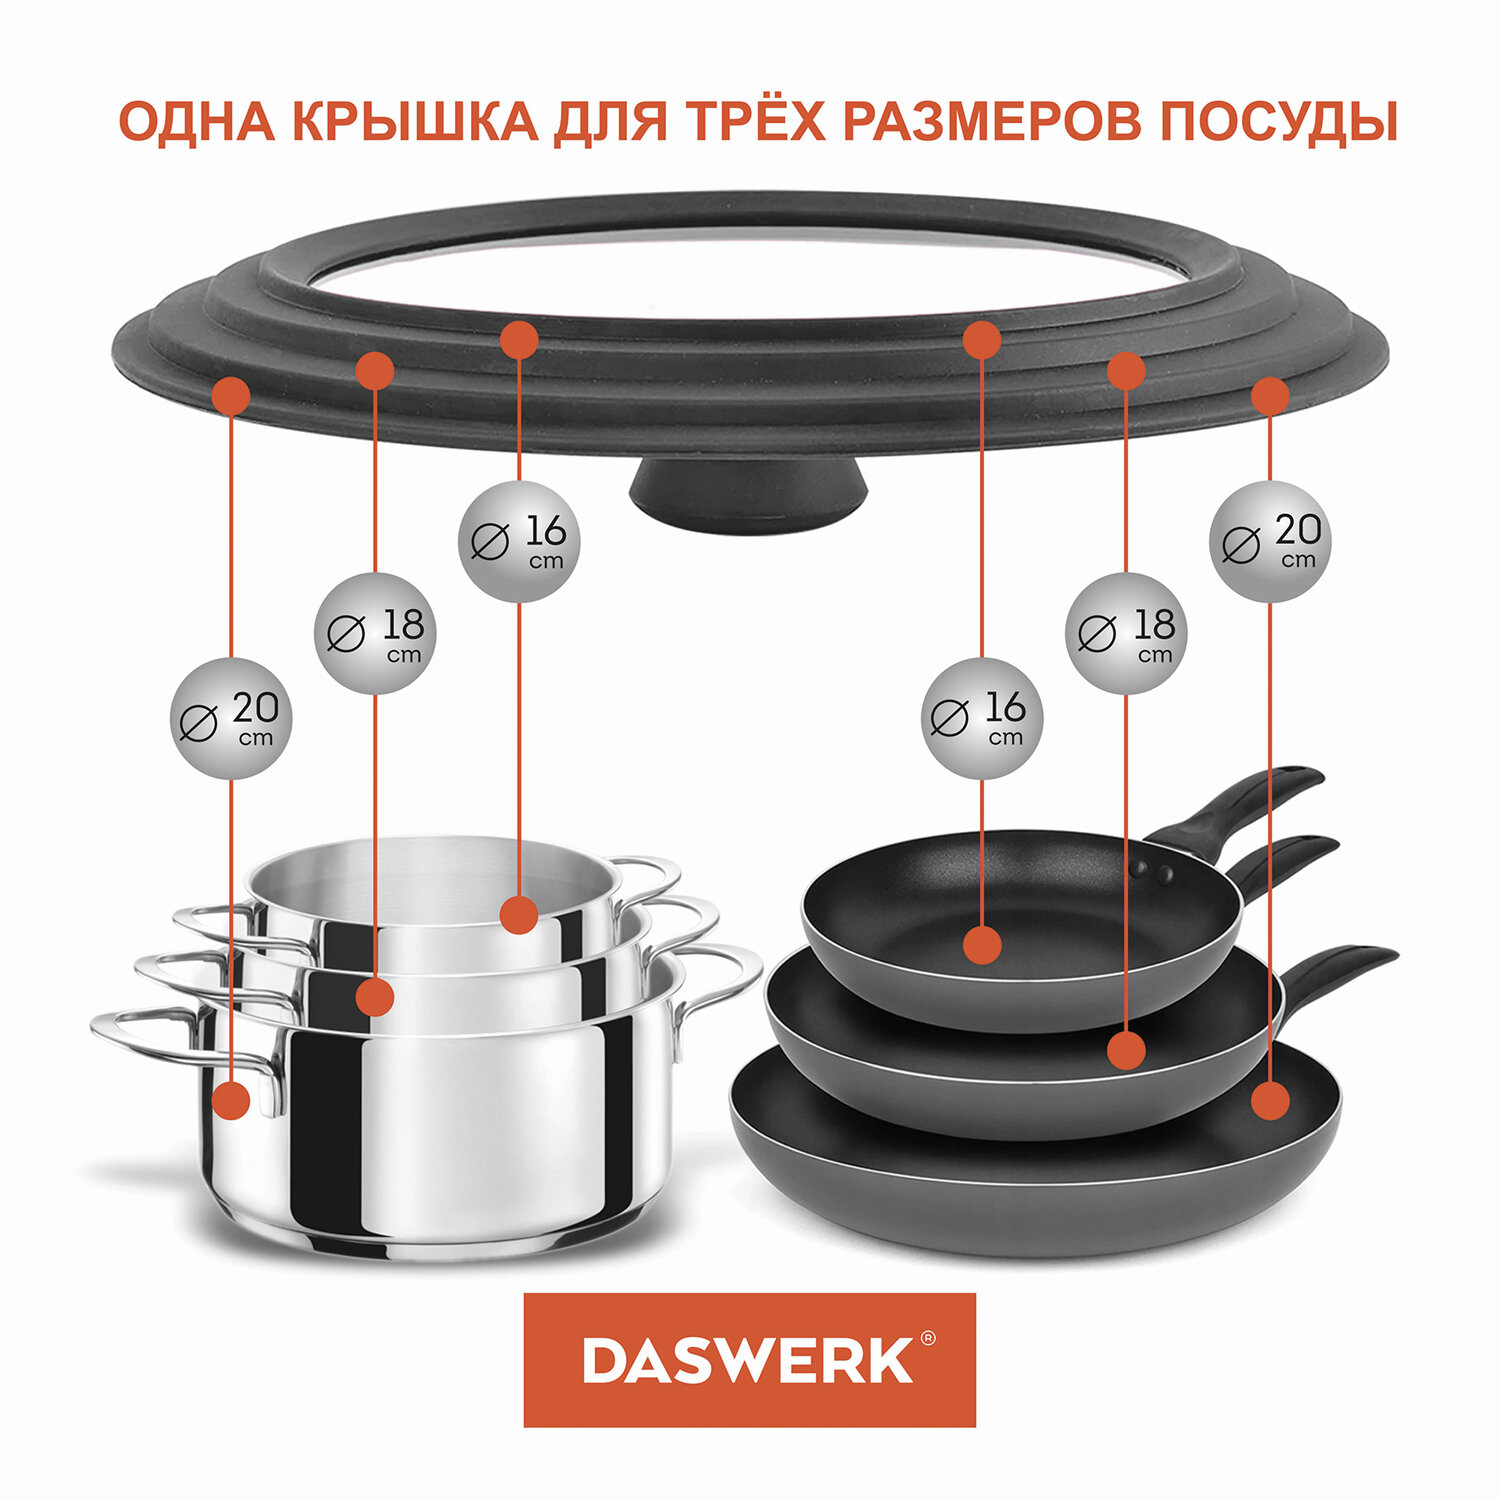 Крышка для сковороды DASWERK кастрюли посуды универсальная 3 размера 16-18-20см - фото 5